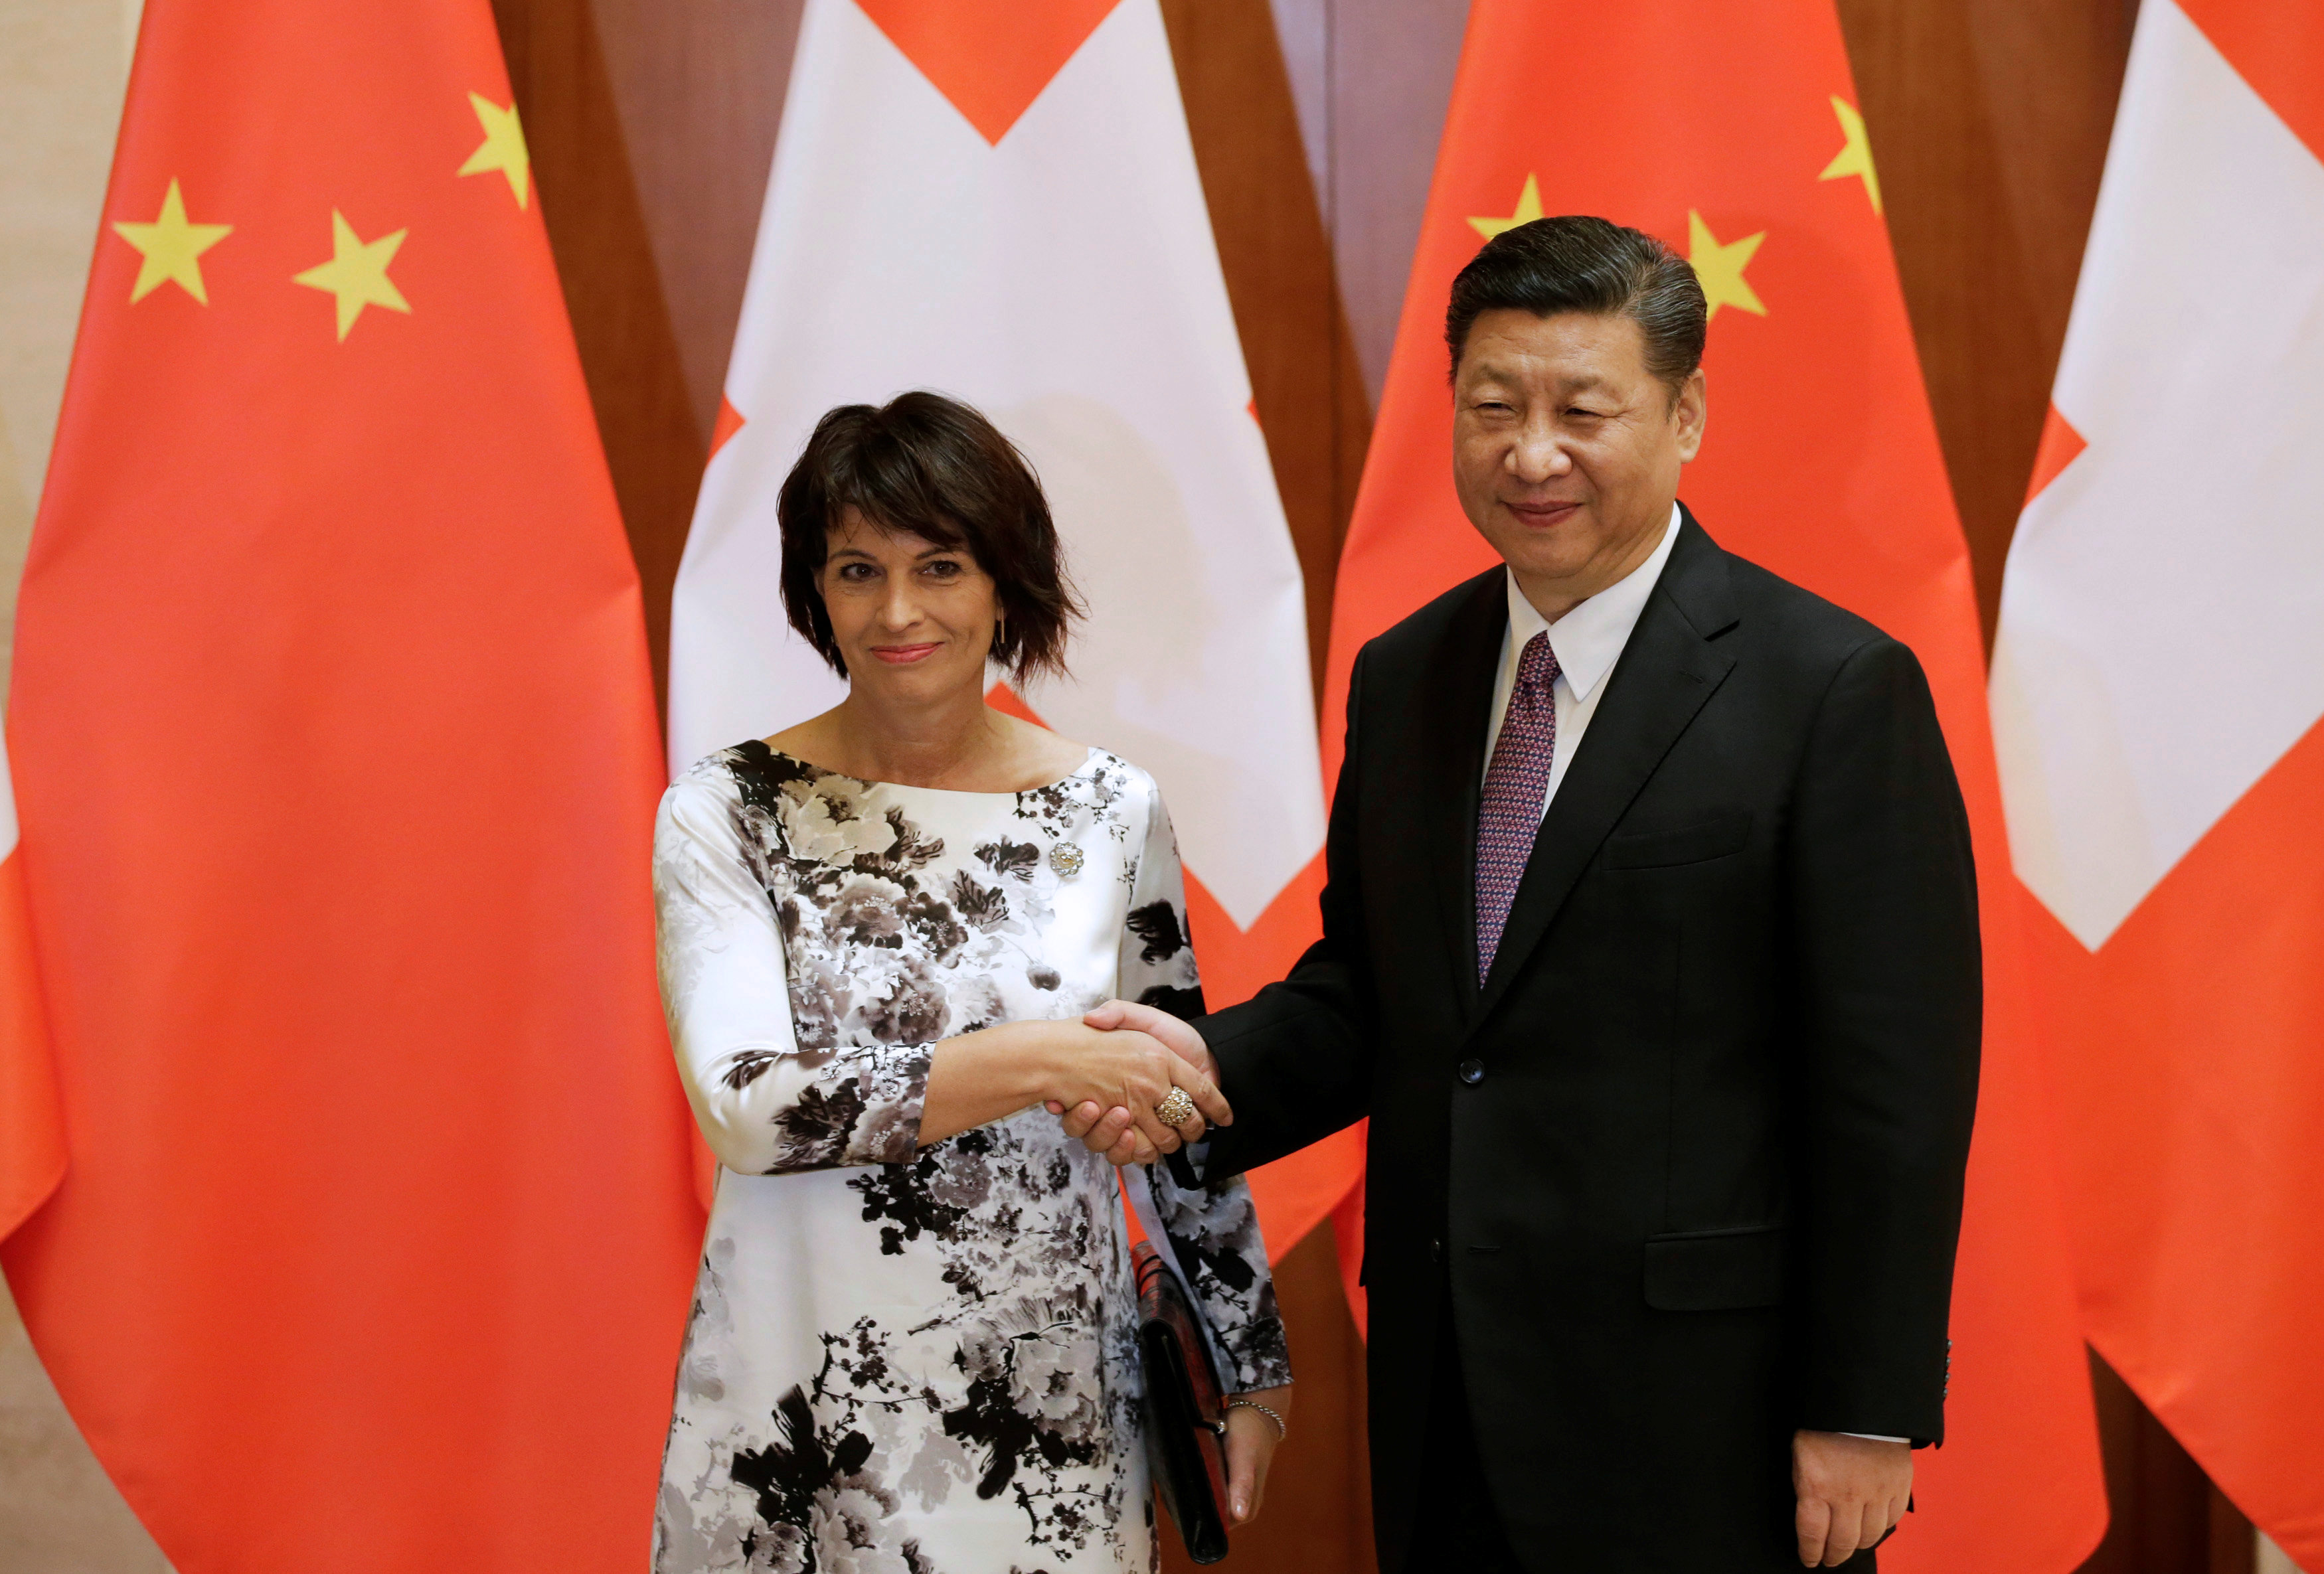 الرئيس الصينى يستقبل رئيسة سويسرا بمنتدى الطريق والحزام